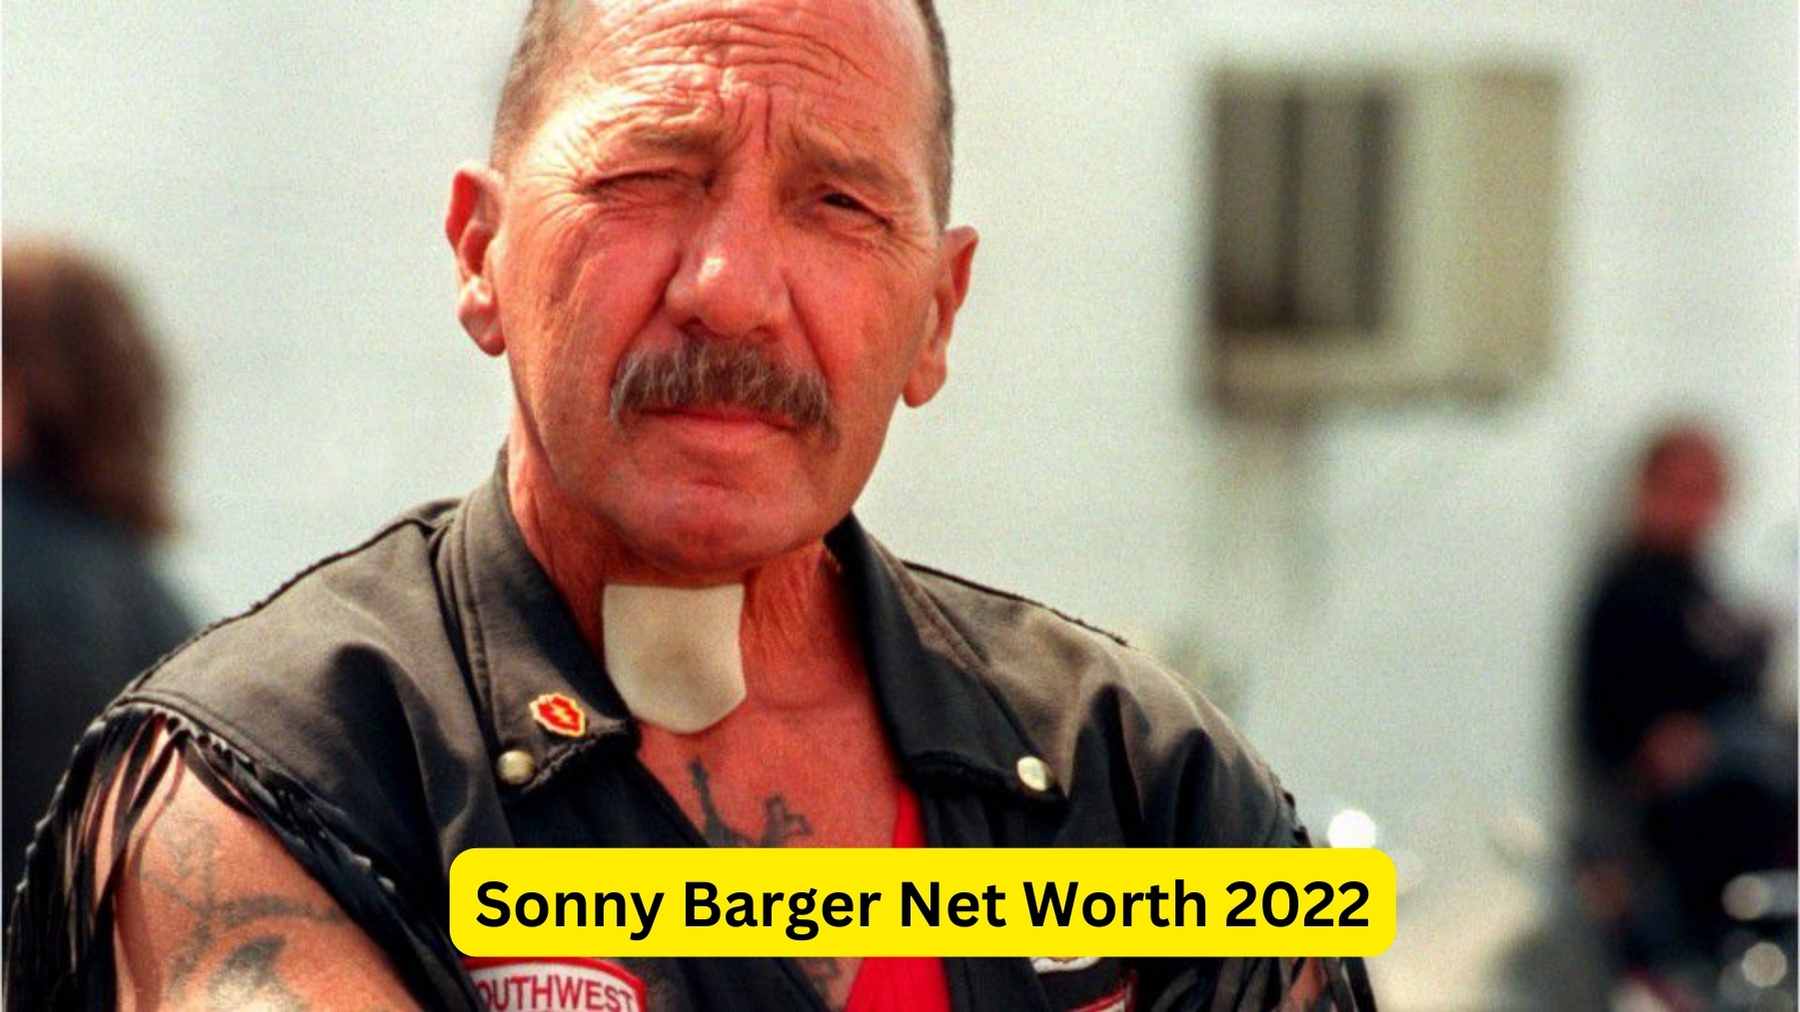 Sonny Barger Net Worth 2022